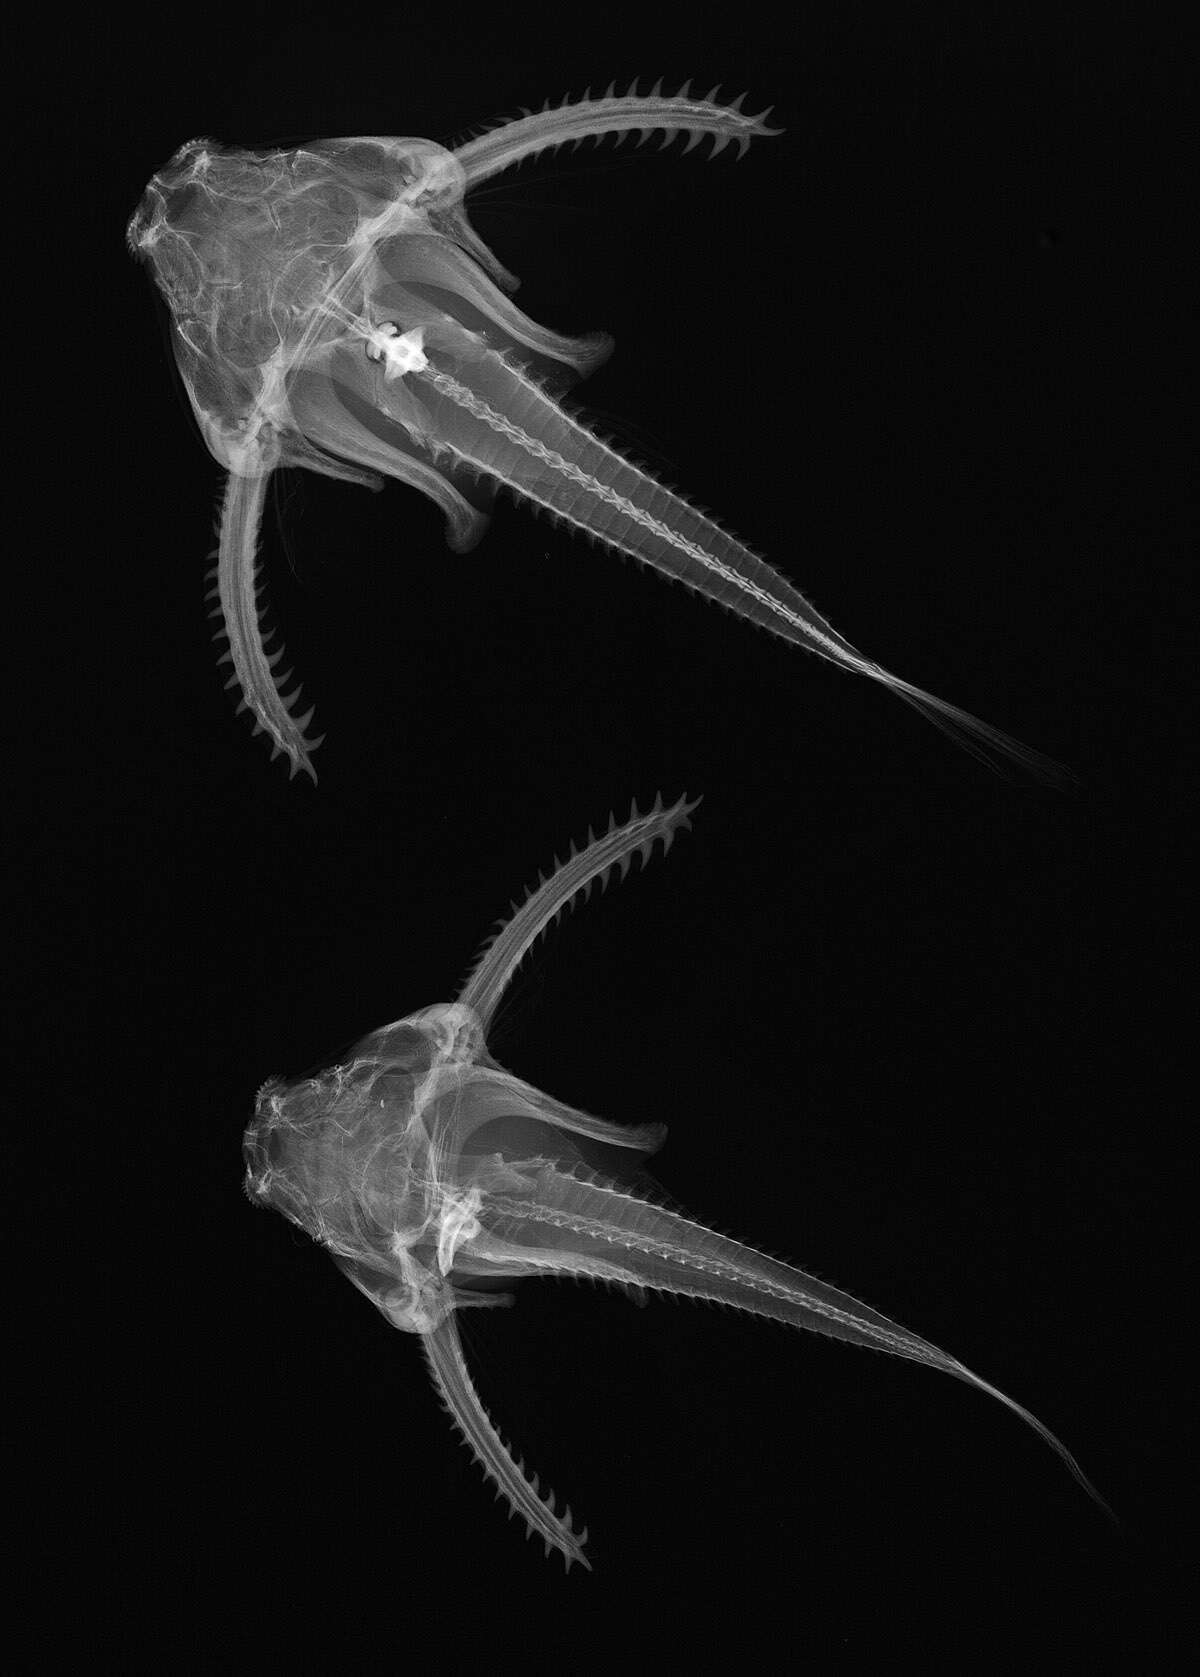 Image of thorny catfishes